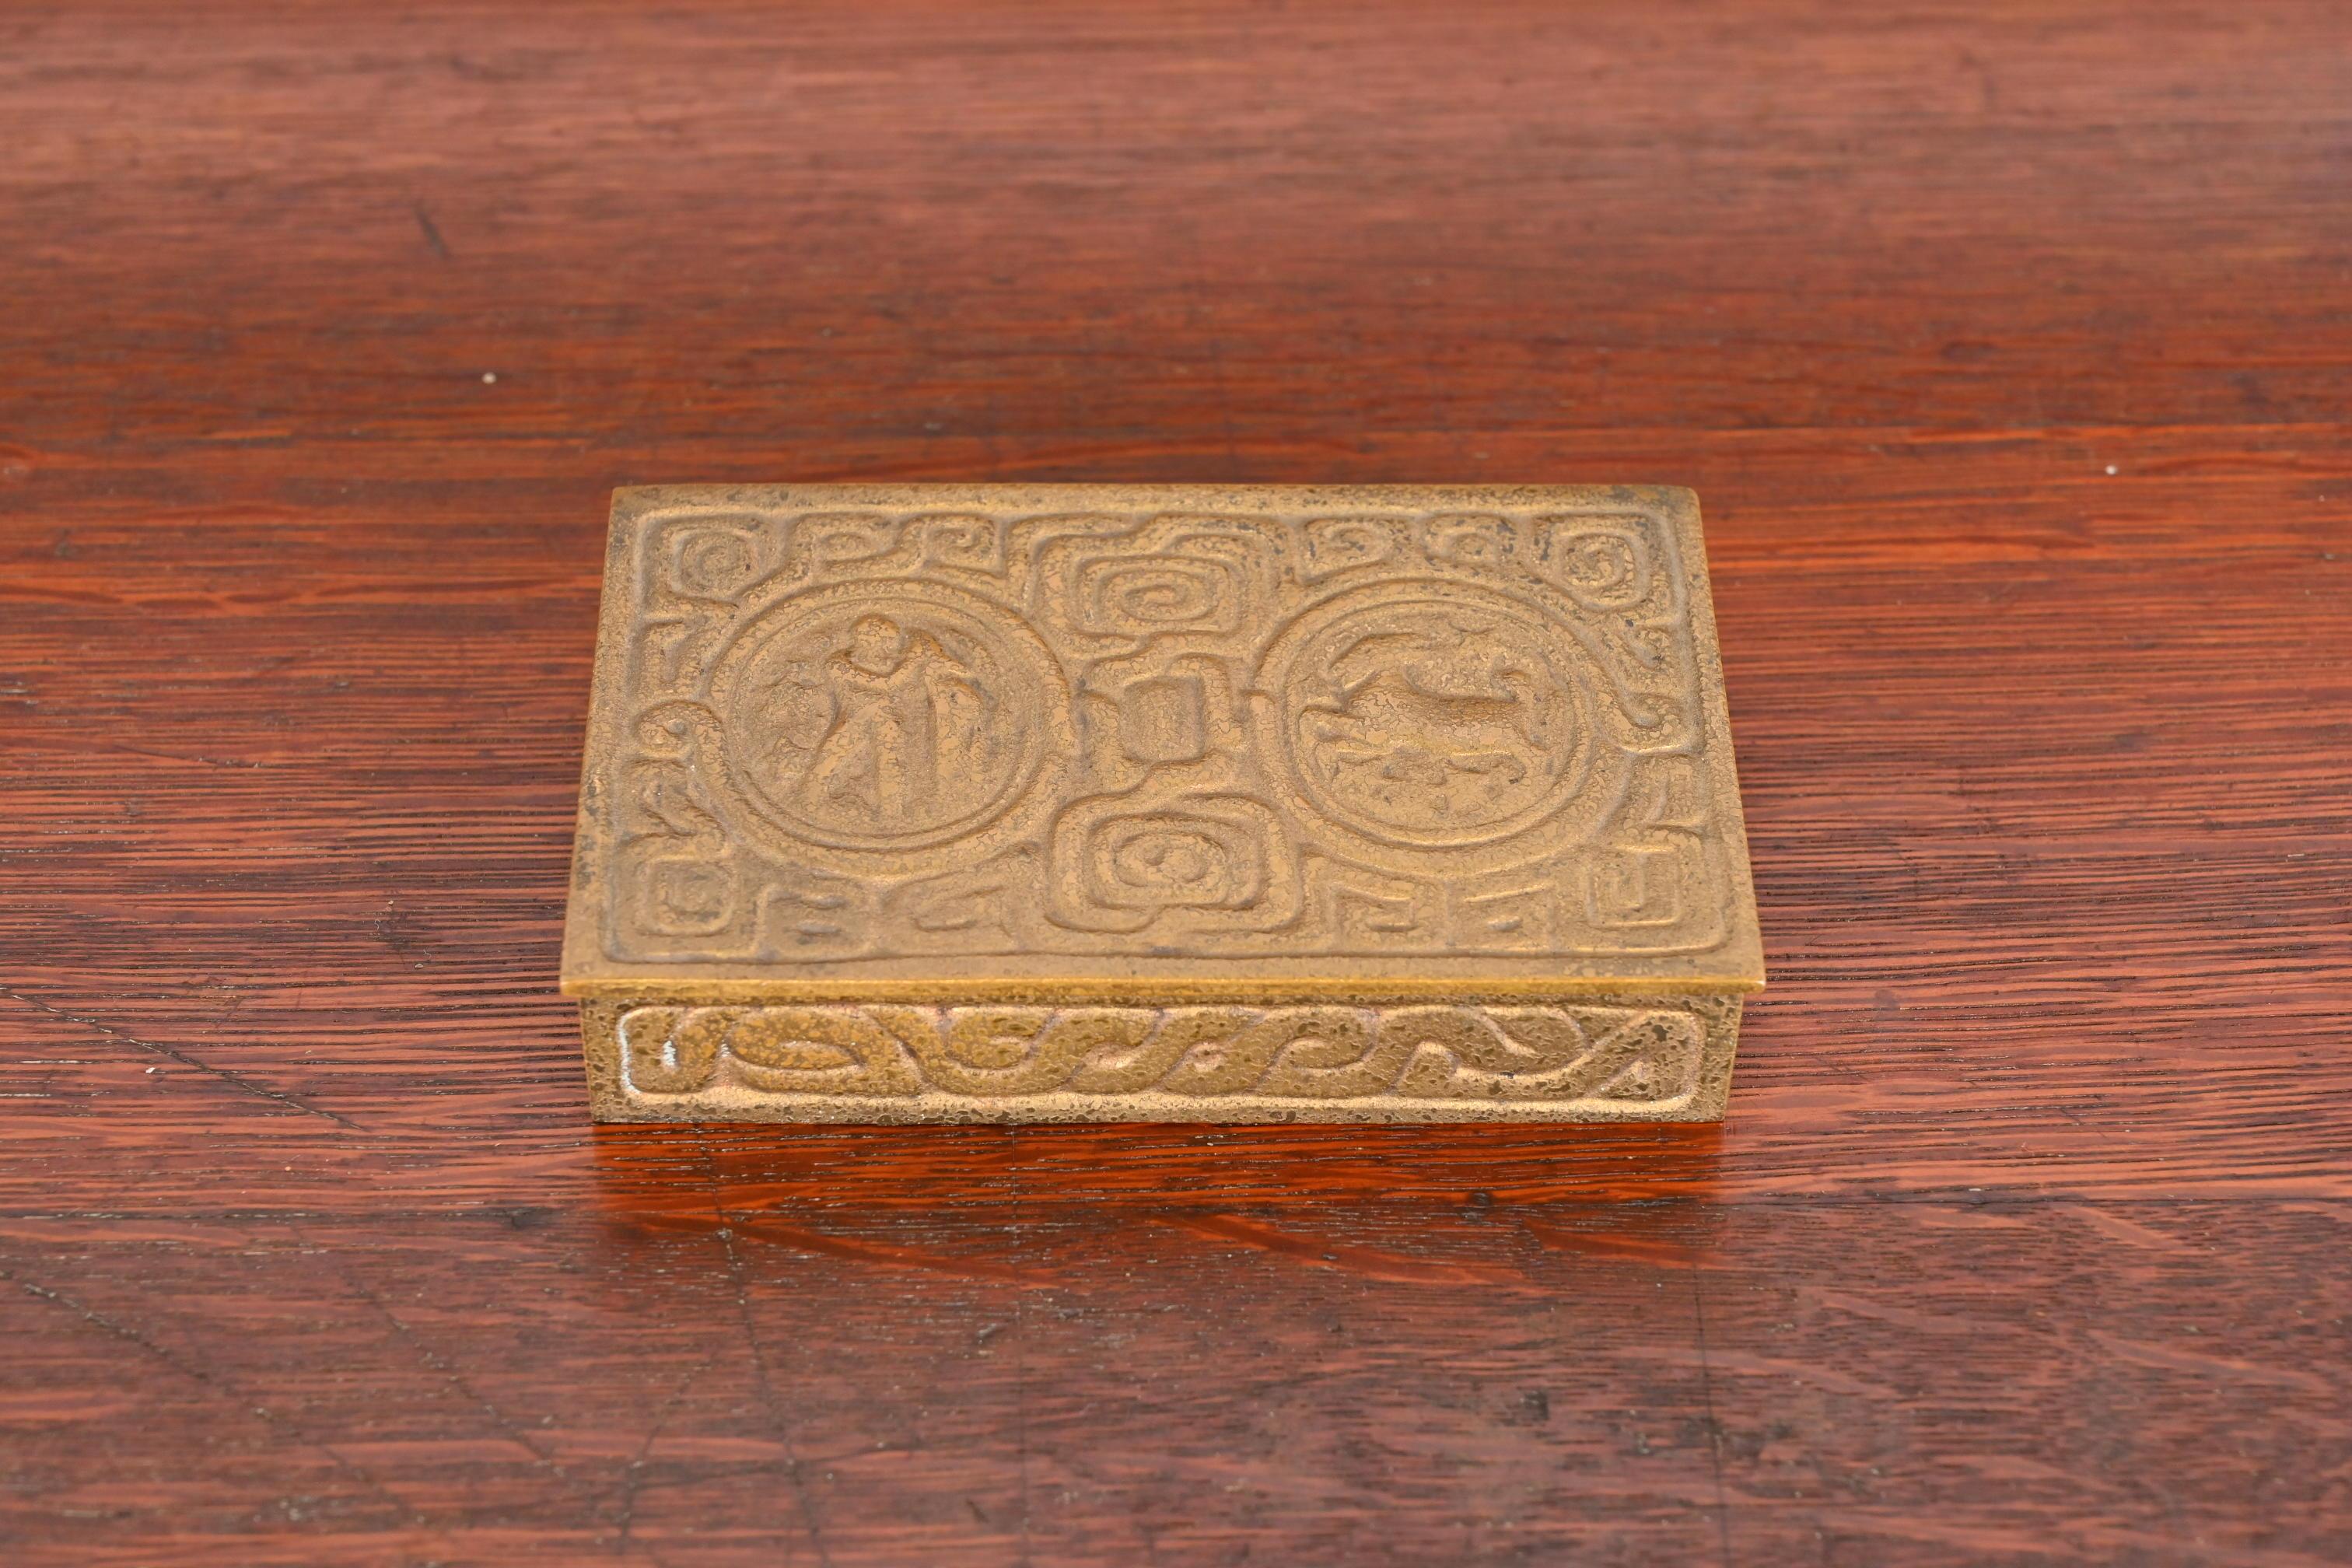 Eine wunderschöne antike vergoldete Bronze-Schreibtischbox, Schmuckschatulle oder dekorative Box mit Zodiac-Motiven

Von Tiffany Studios (signiert auf der Unterseite)

New York, USA, Anfang des 20. Jahrhunderts

Maße: 5,38 